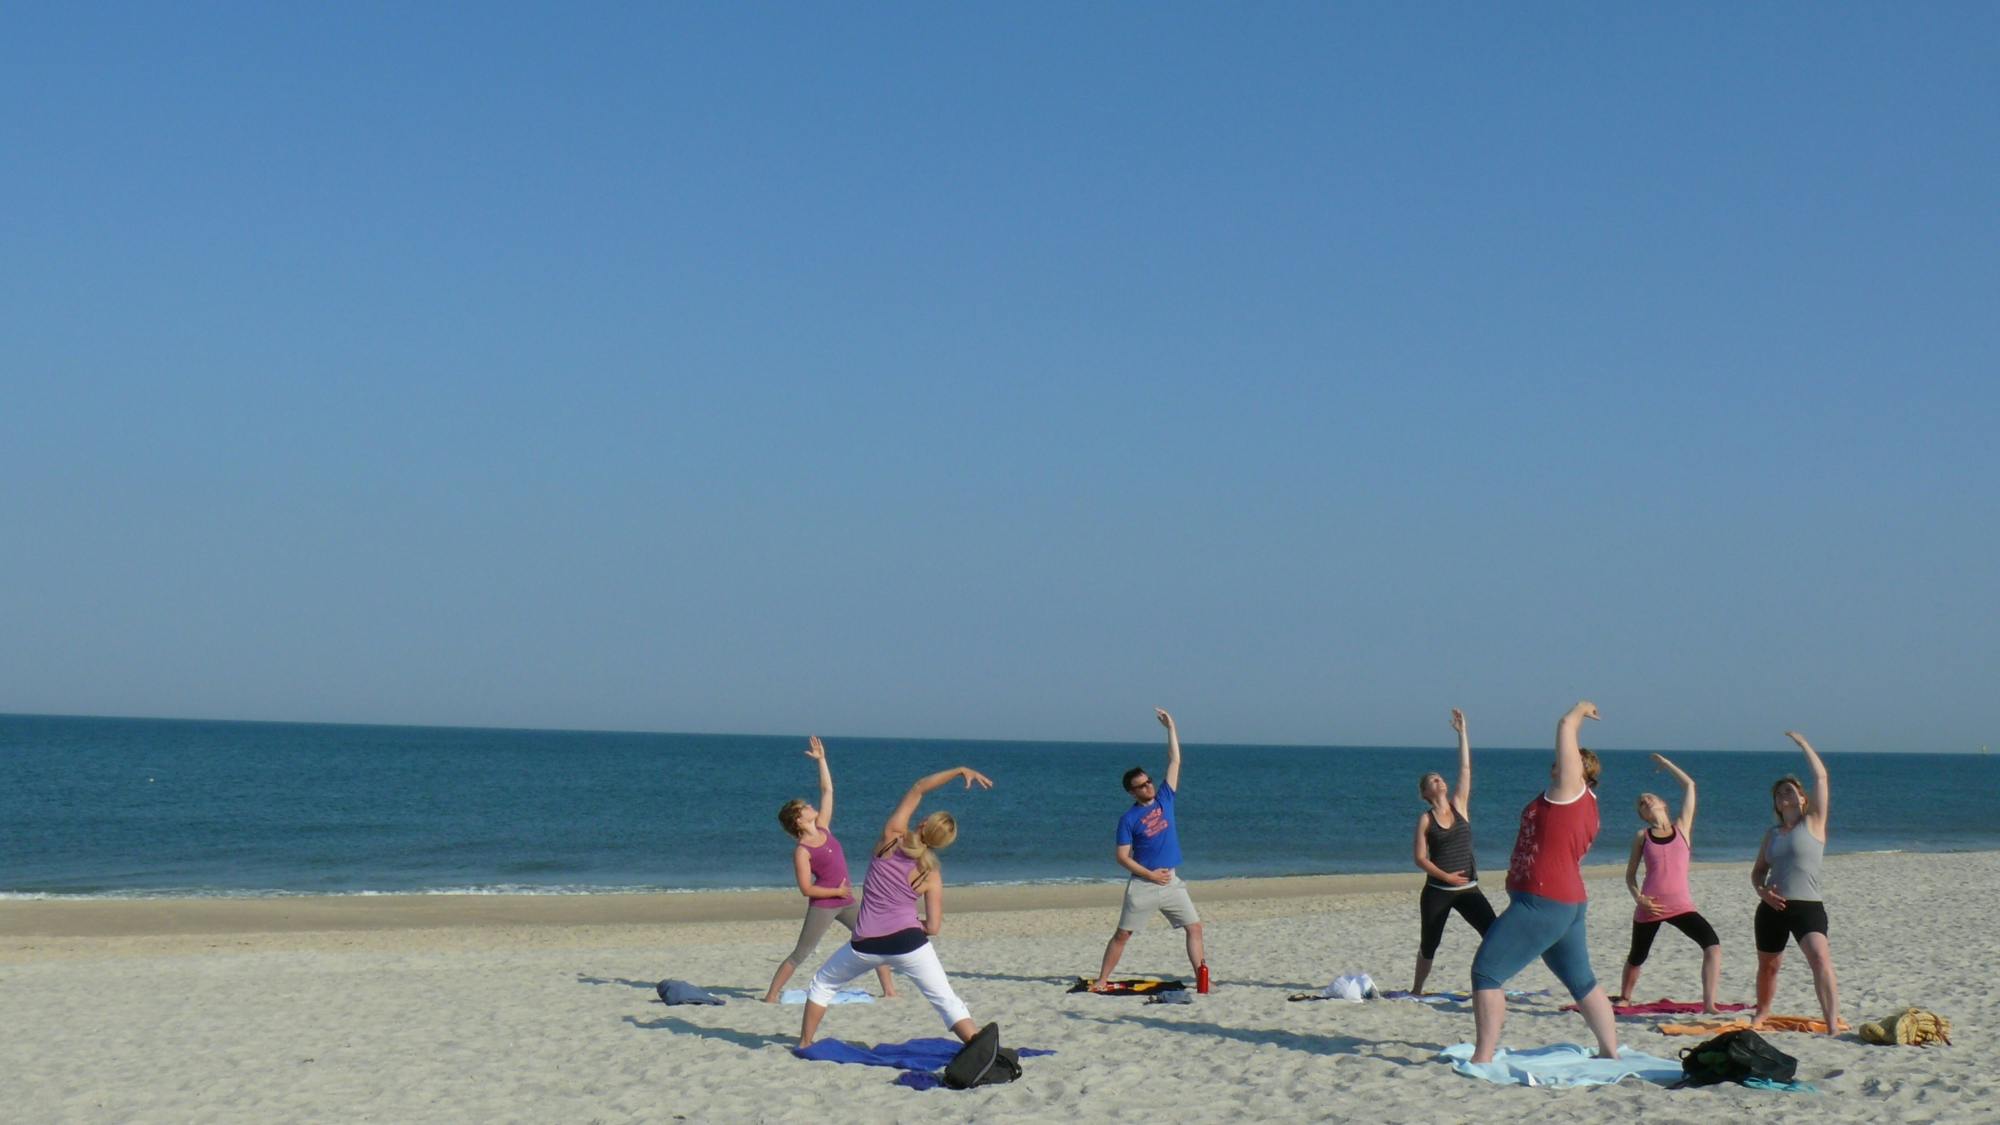 Sessione di yoga sulla spiaggia dell'isola di Sylt